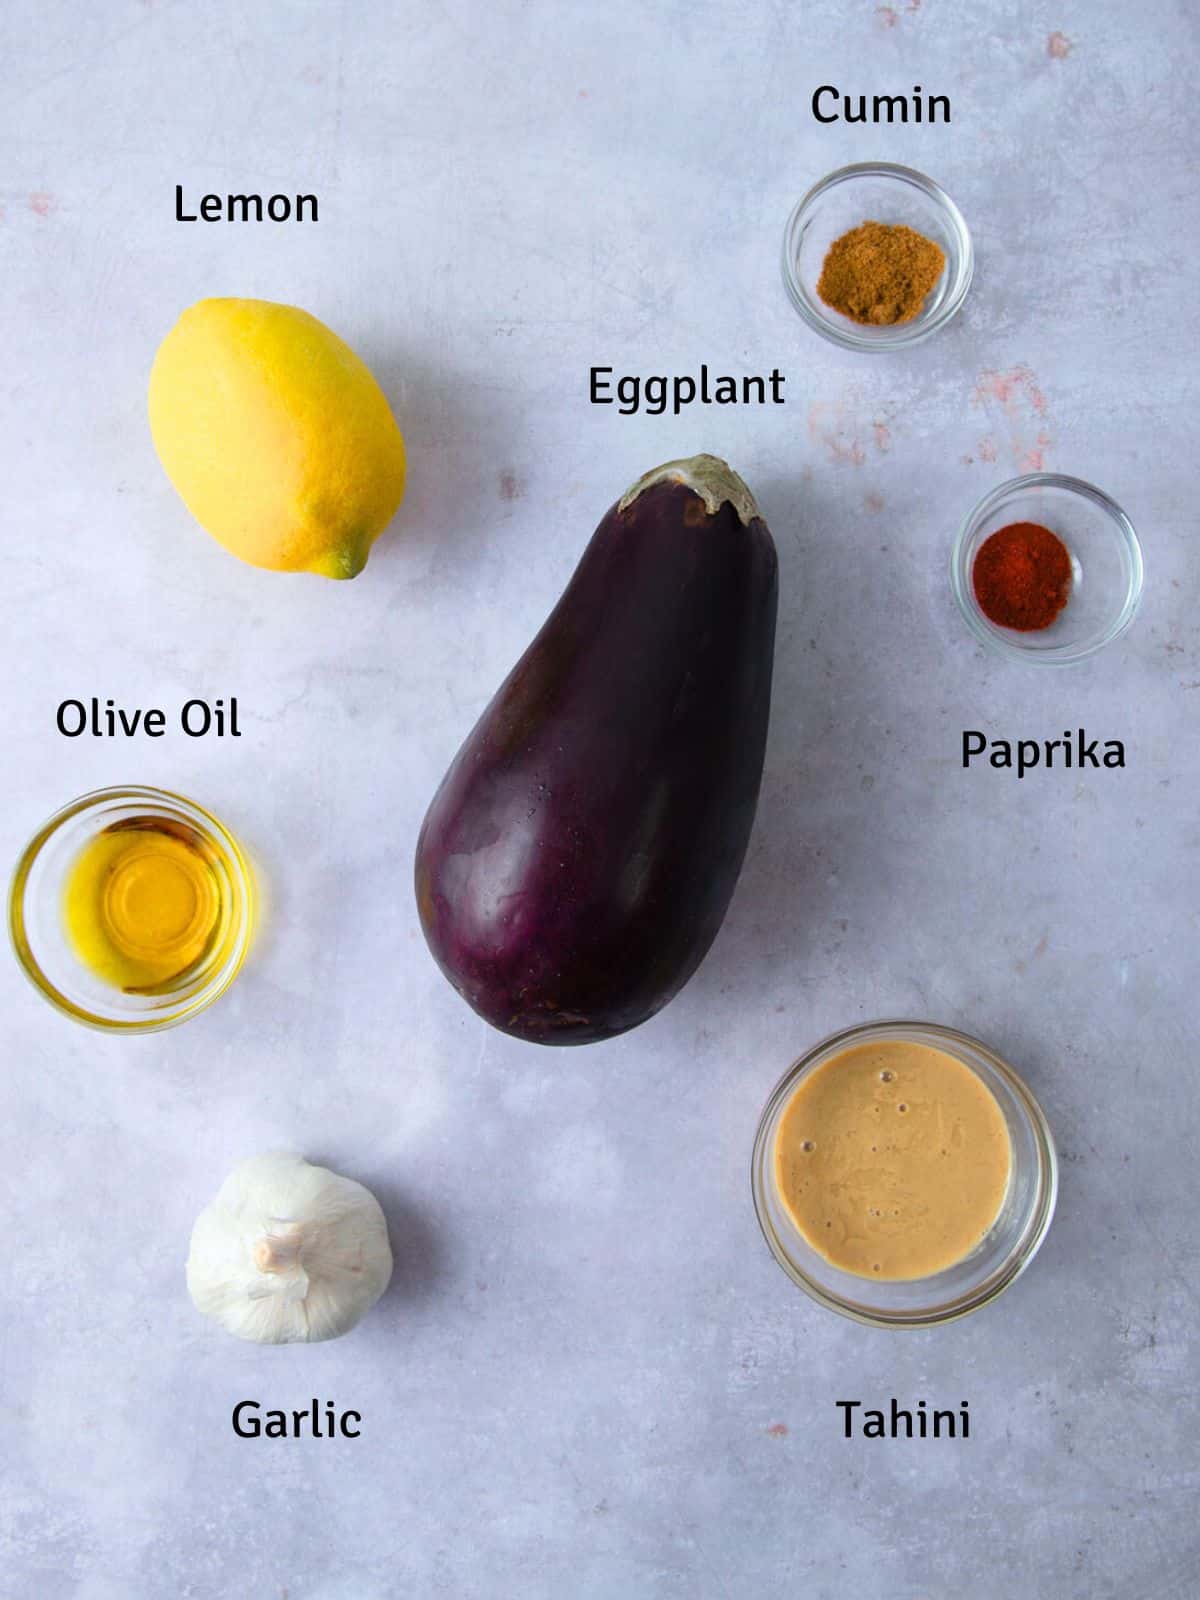 Ingredients for baba ganoush including tahini, garlic and paprika.